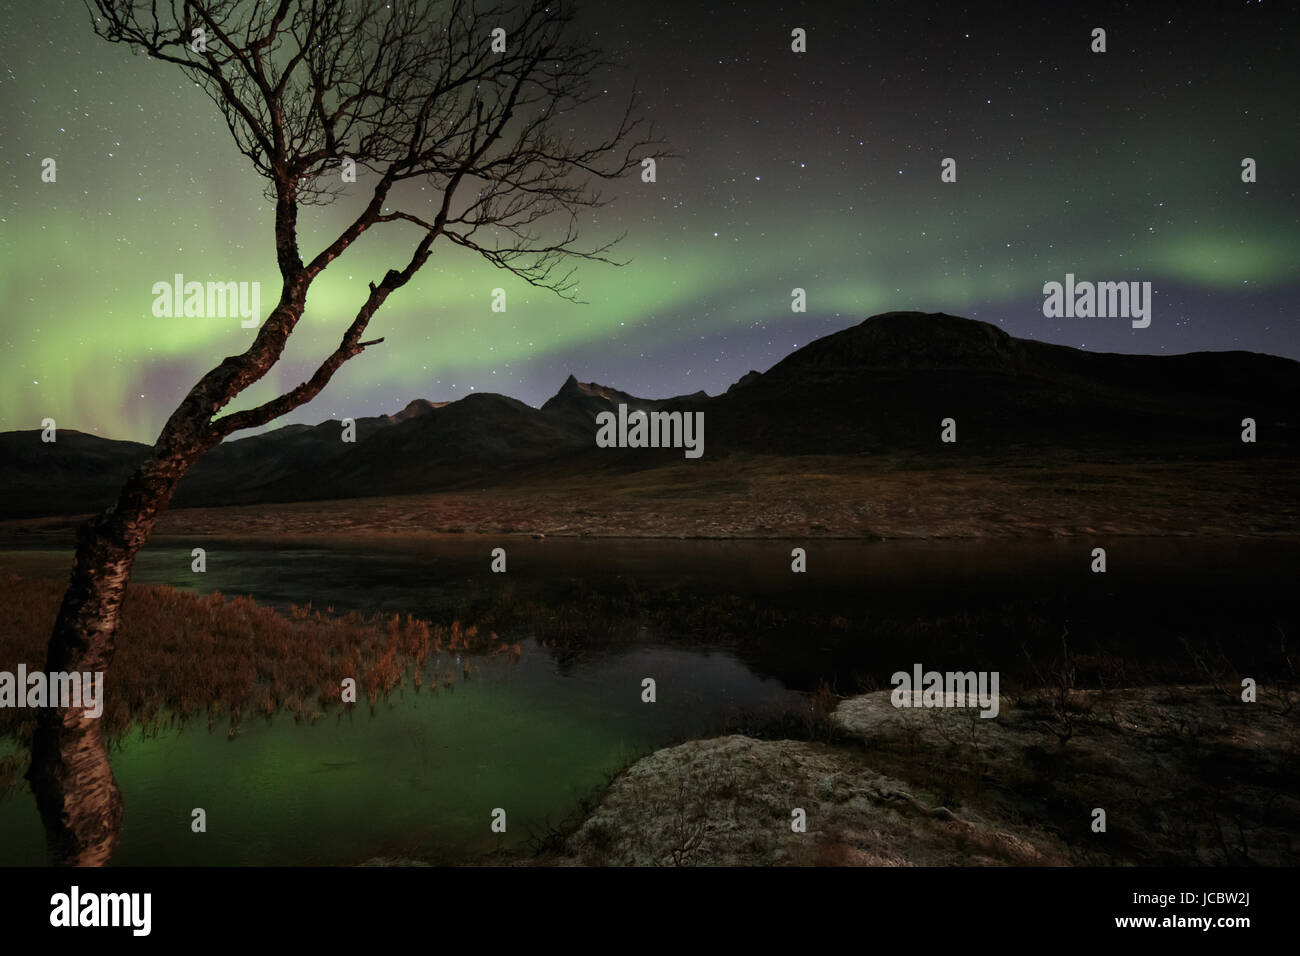 Aurora boreale o luci del nord, attivo tende colorate in movimento attraverso il cielo notturno a nord del Circolo Polare Artico Kvaloya isola di Troms Tromso Norvegia regione 2016 migliori Foto Stock